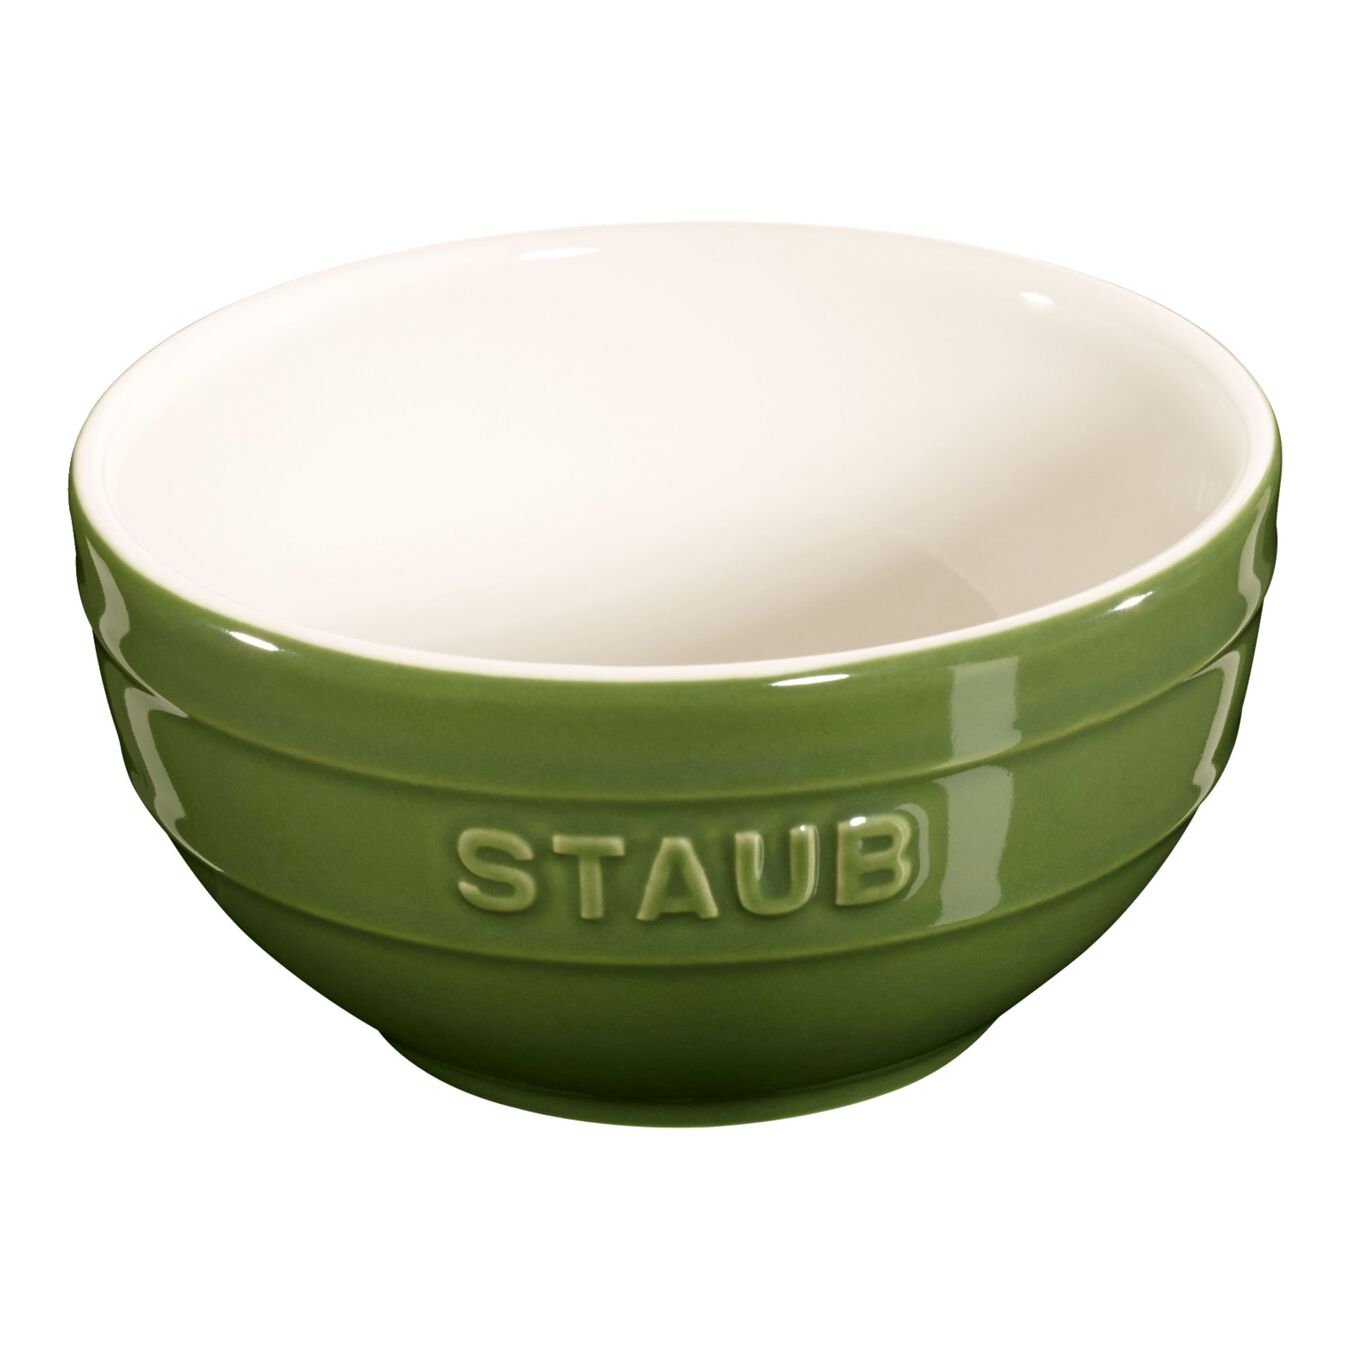 14 cm round Ceramic Bowl basil-green,,large 1